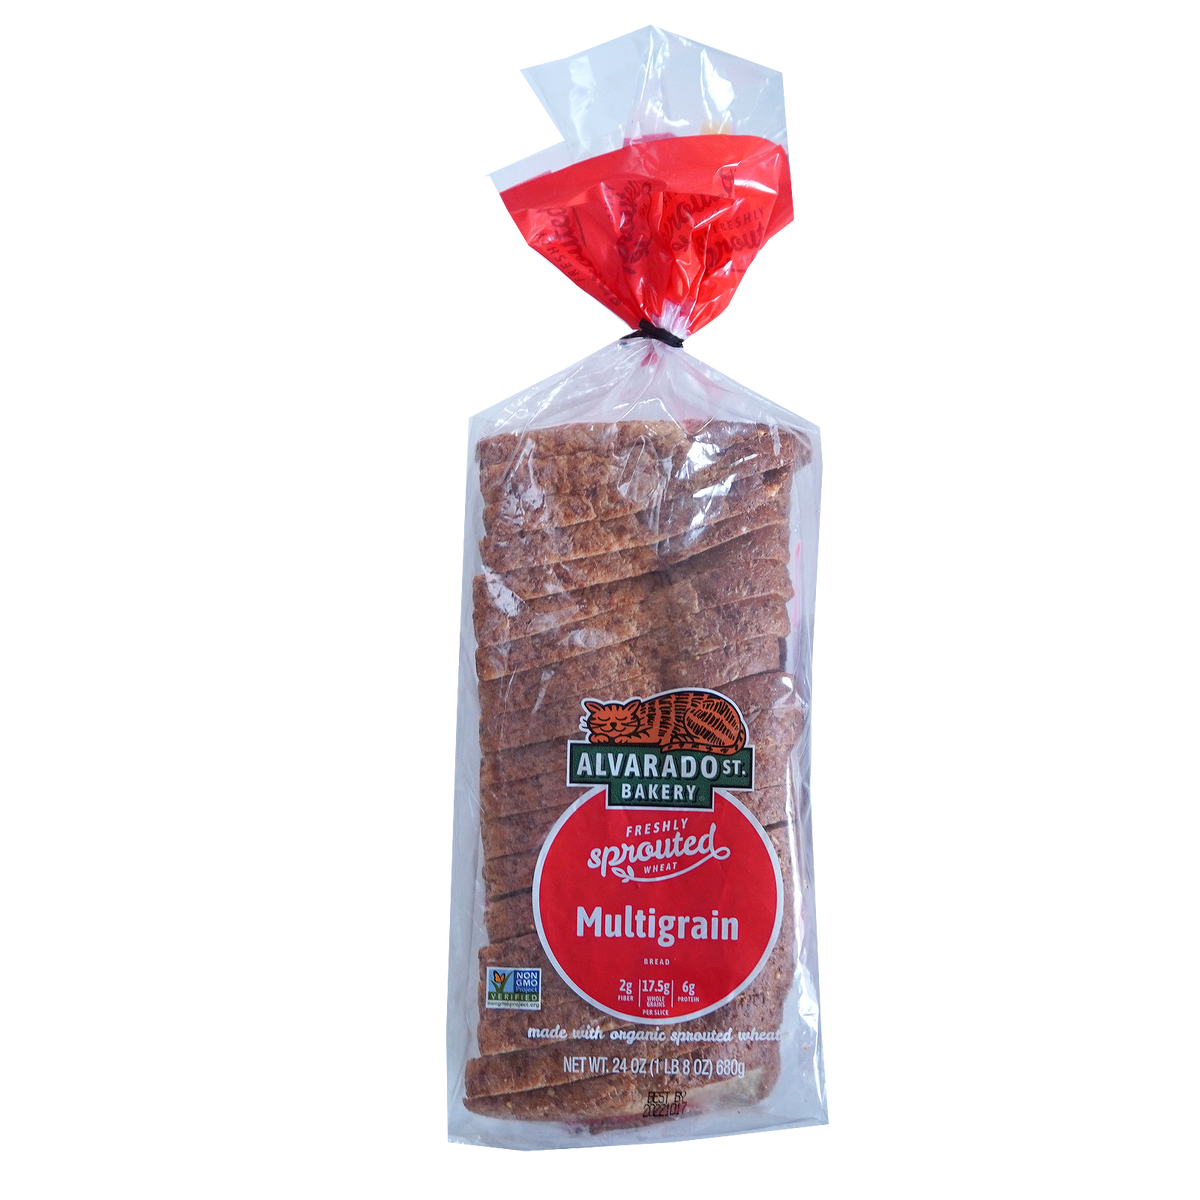 発芽小麦 マルチグレイン ブレッド 食パン カリフォルニア産 (680g) ホライズンファームズ